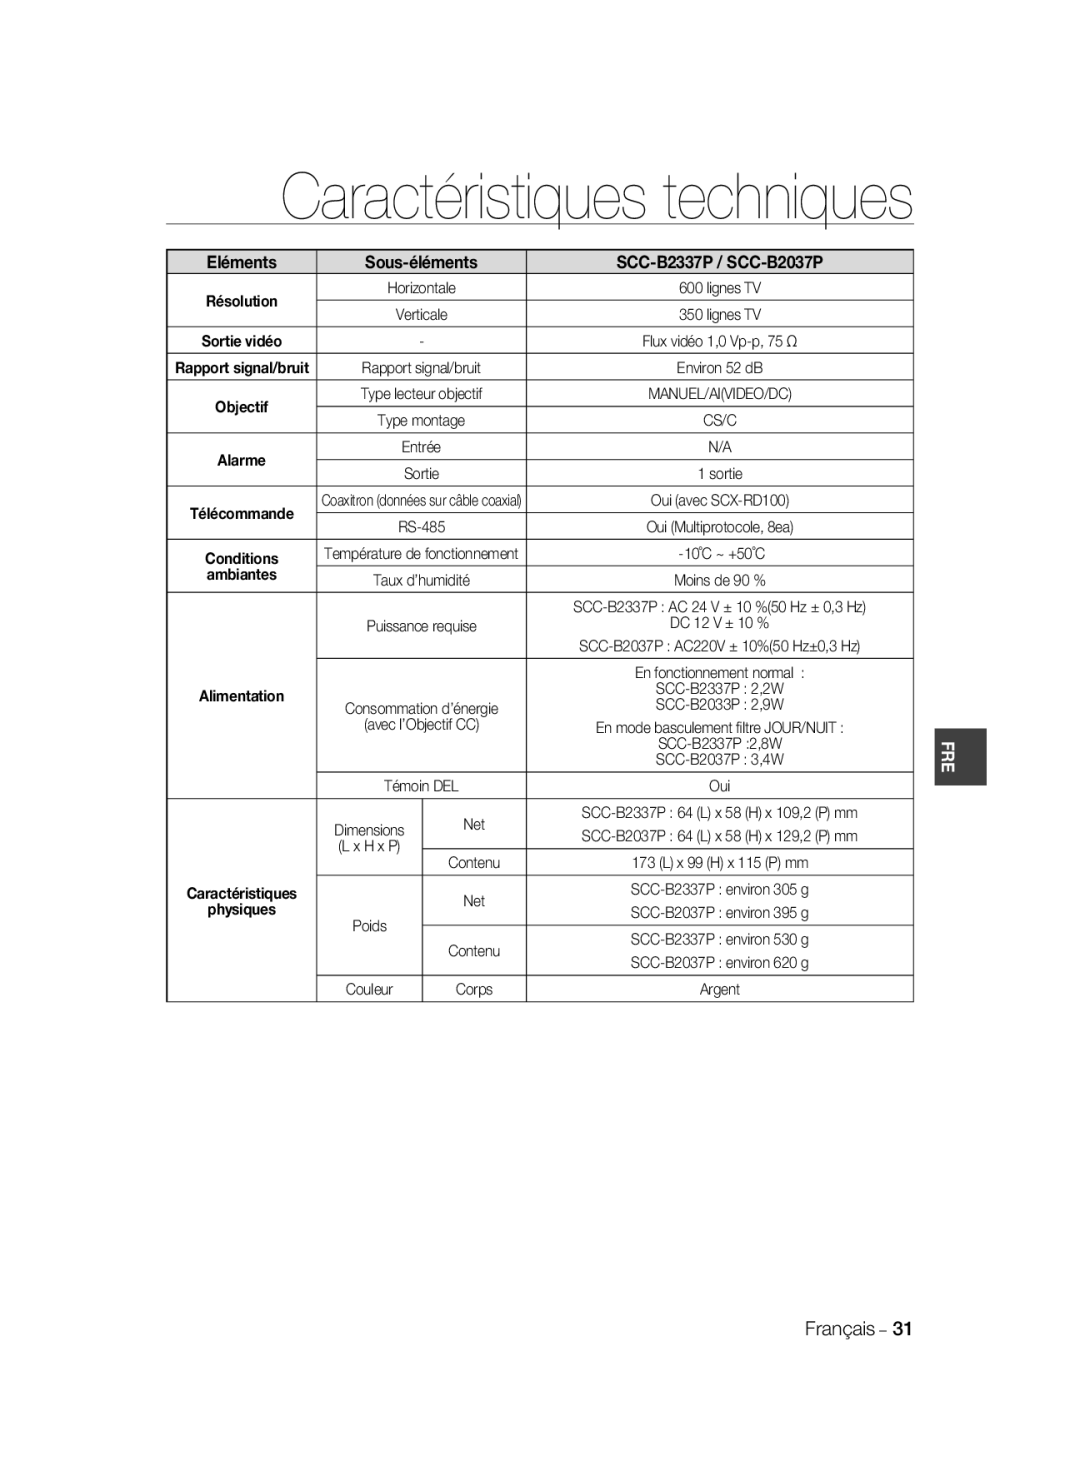 Samsung manual Caractéristiques techniques, Eléments, Sous-éléments, SCC-B2337P / SCC-B2037P, ambiantes 